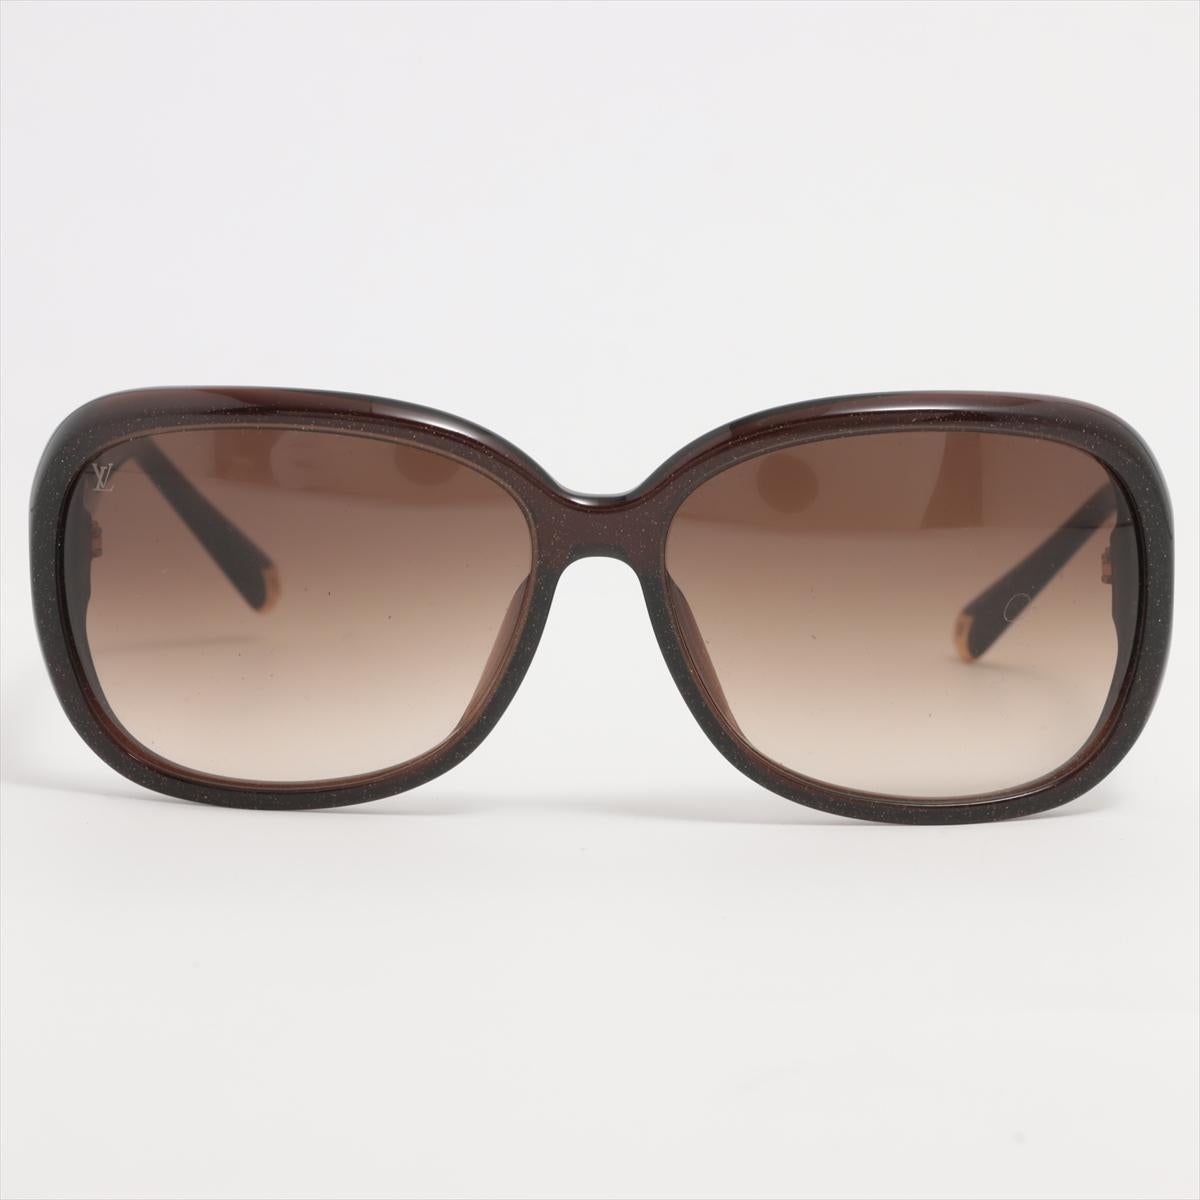 Les lunettes de soleil LV Obsession Round sont une nouvelle version du modèle le plus vendu, réinventé avec une finition étincelante. Ces lunettes surdimensionnées sont dotées d'une monture en acétate à effet pailleté, rehaussée d'accents